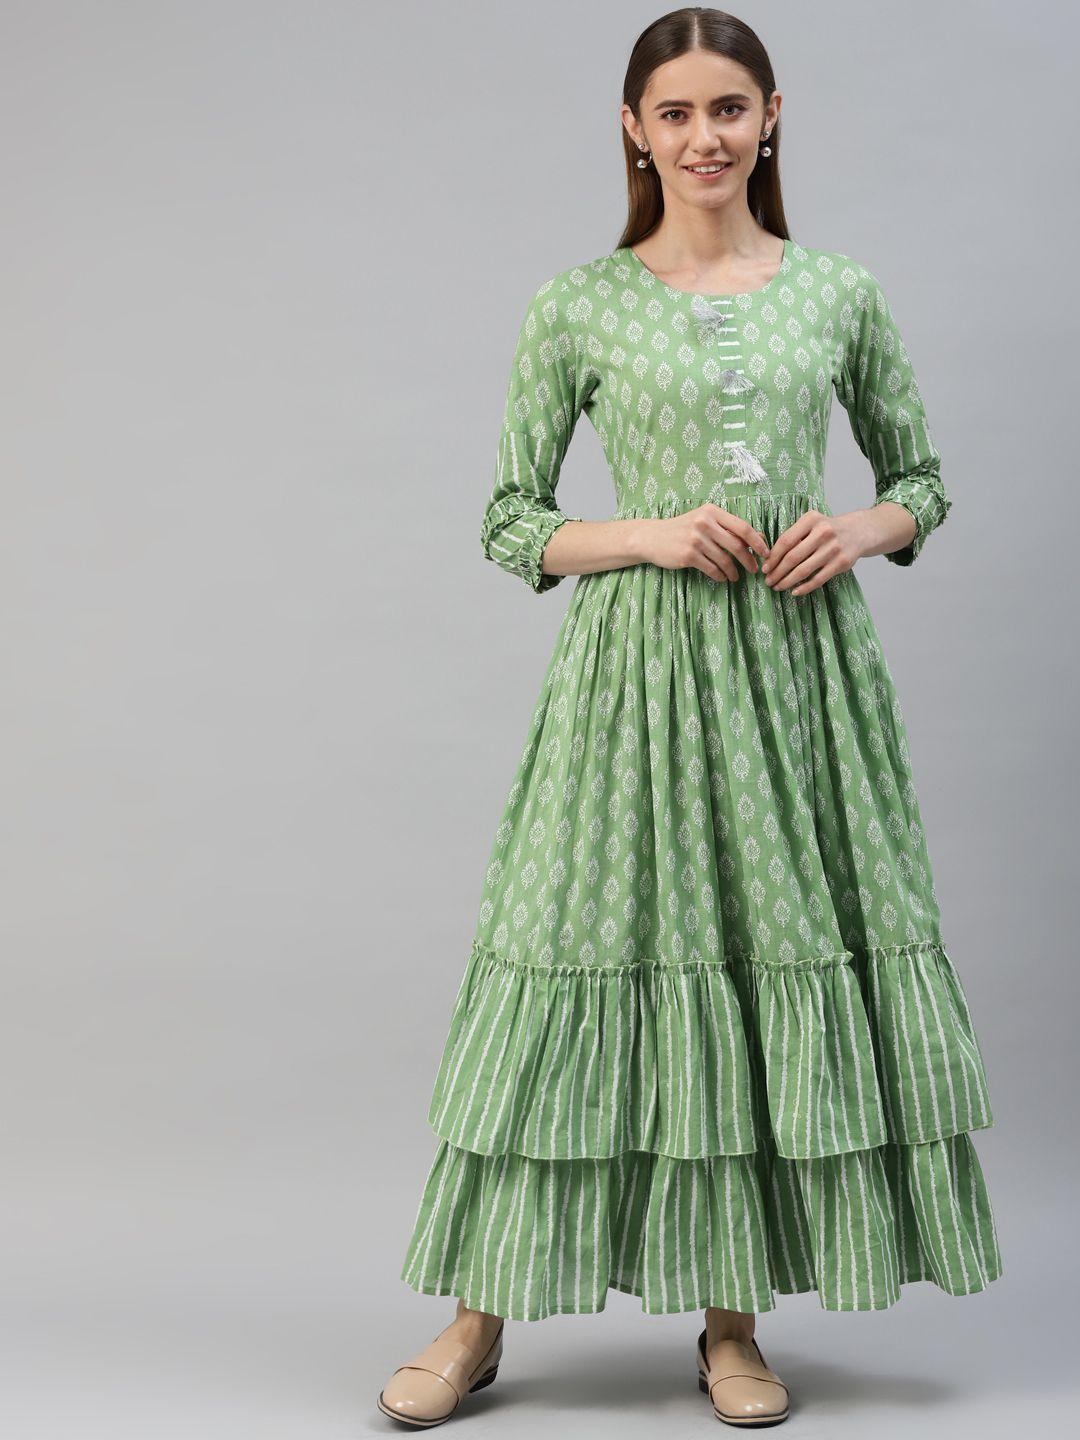 kipek green cotton ethnic motifs print tiered maxi dress